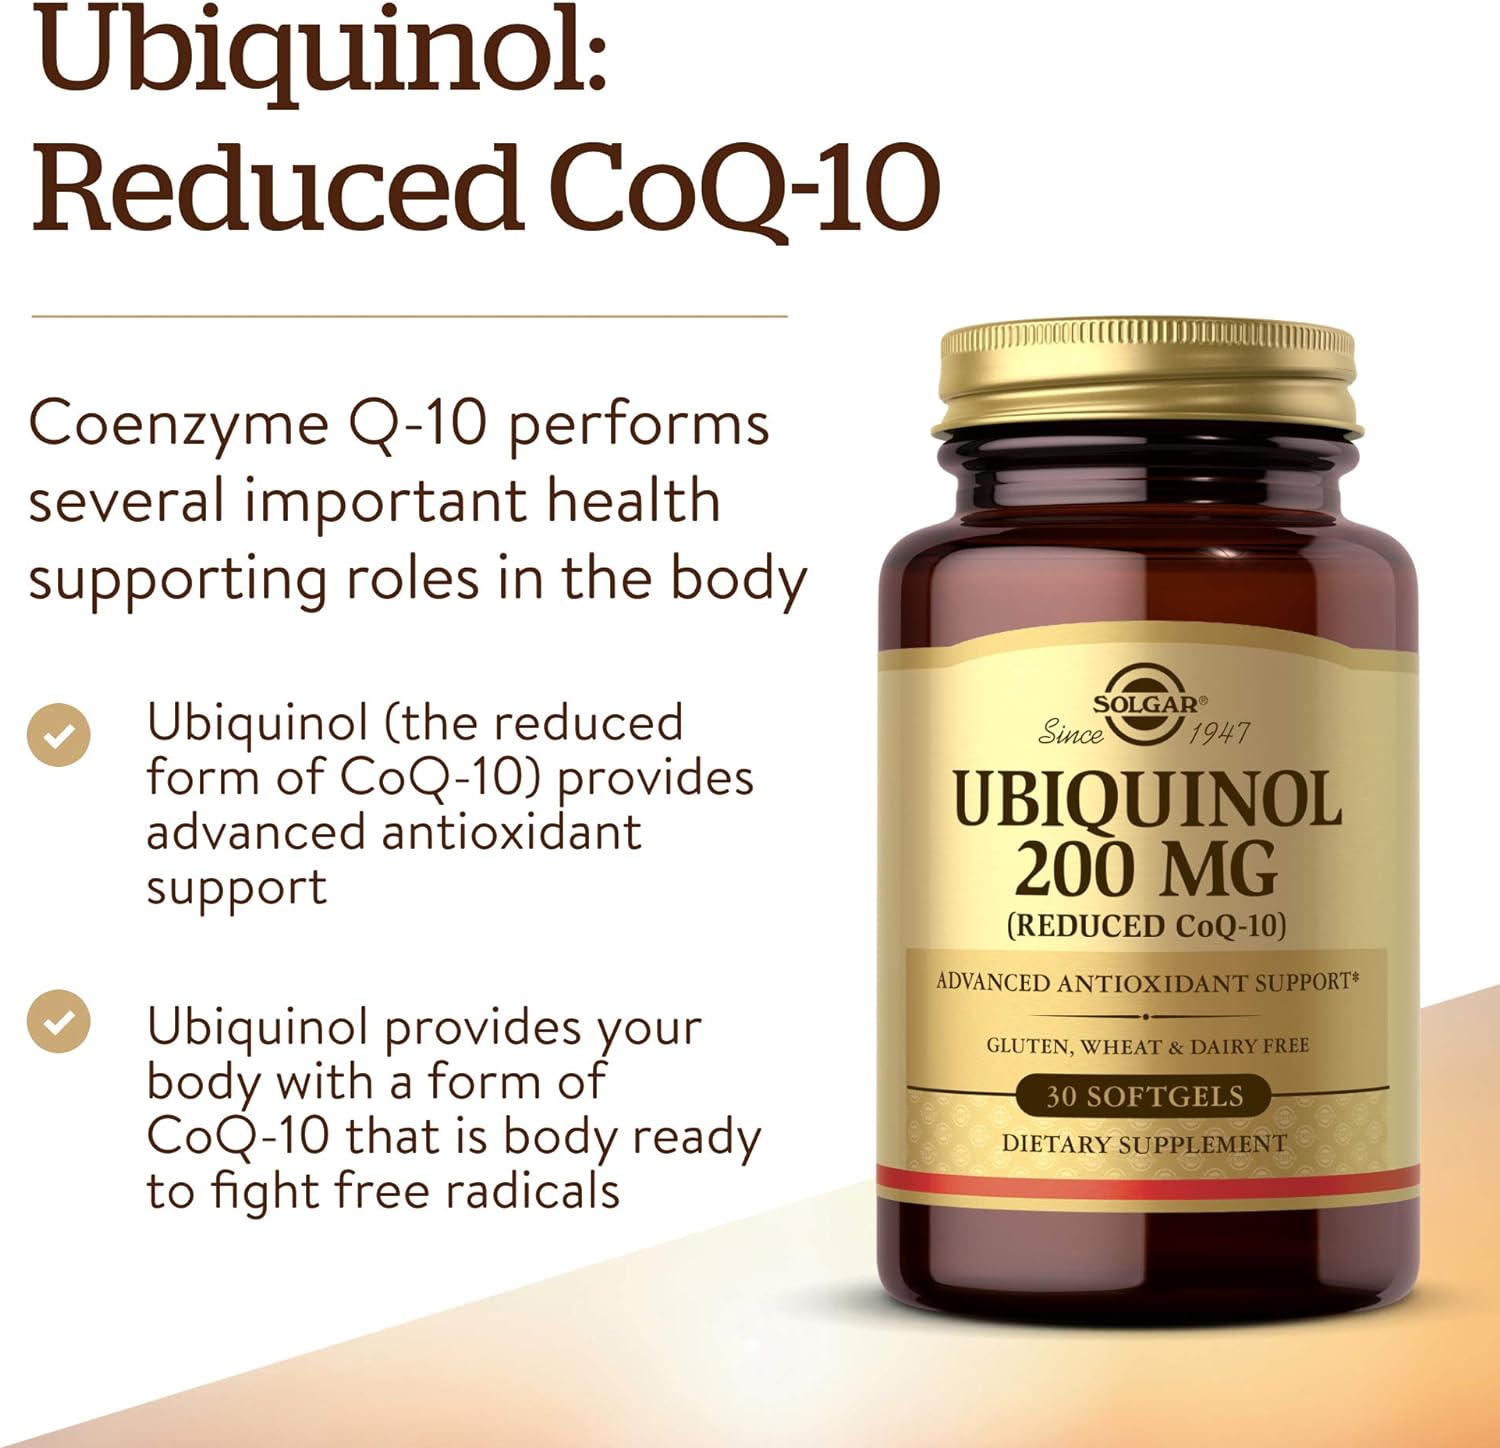 Solgar Ubiquinol 200 mg (Reduced CoQ-10), 30 Softgels - Promotes Heart